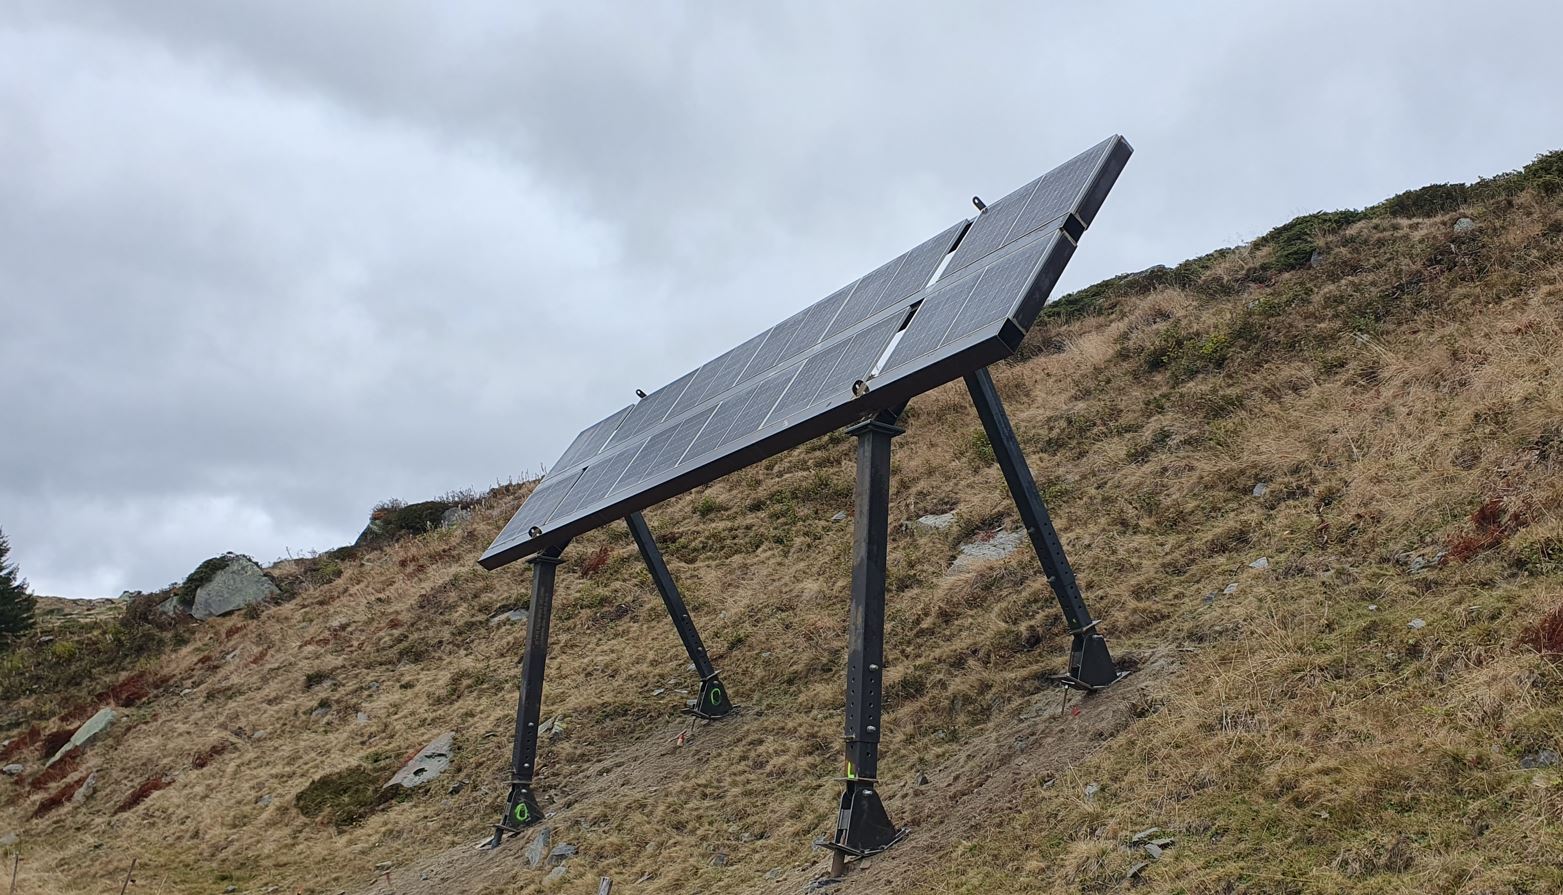 Testanlage in Tujetsch beim Solarprojekt NalpSolar